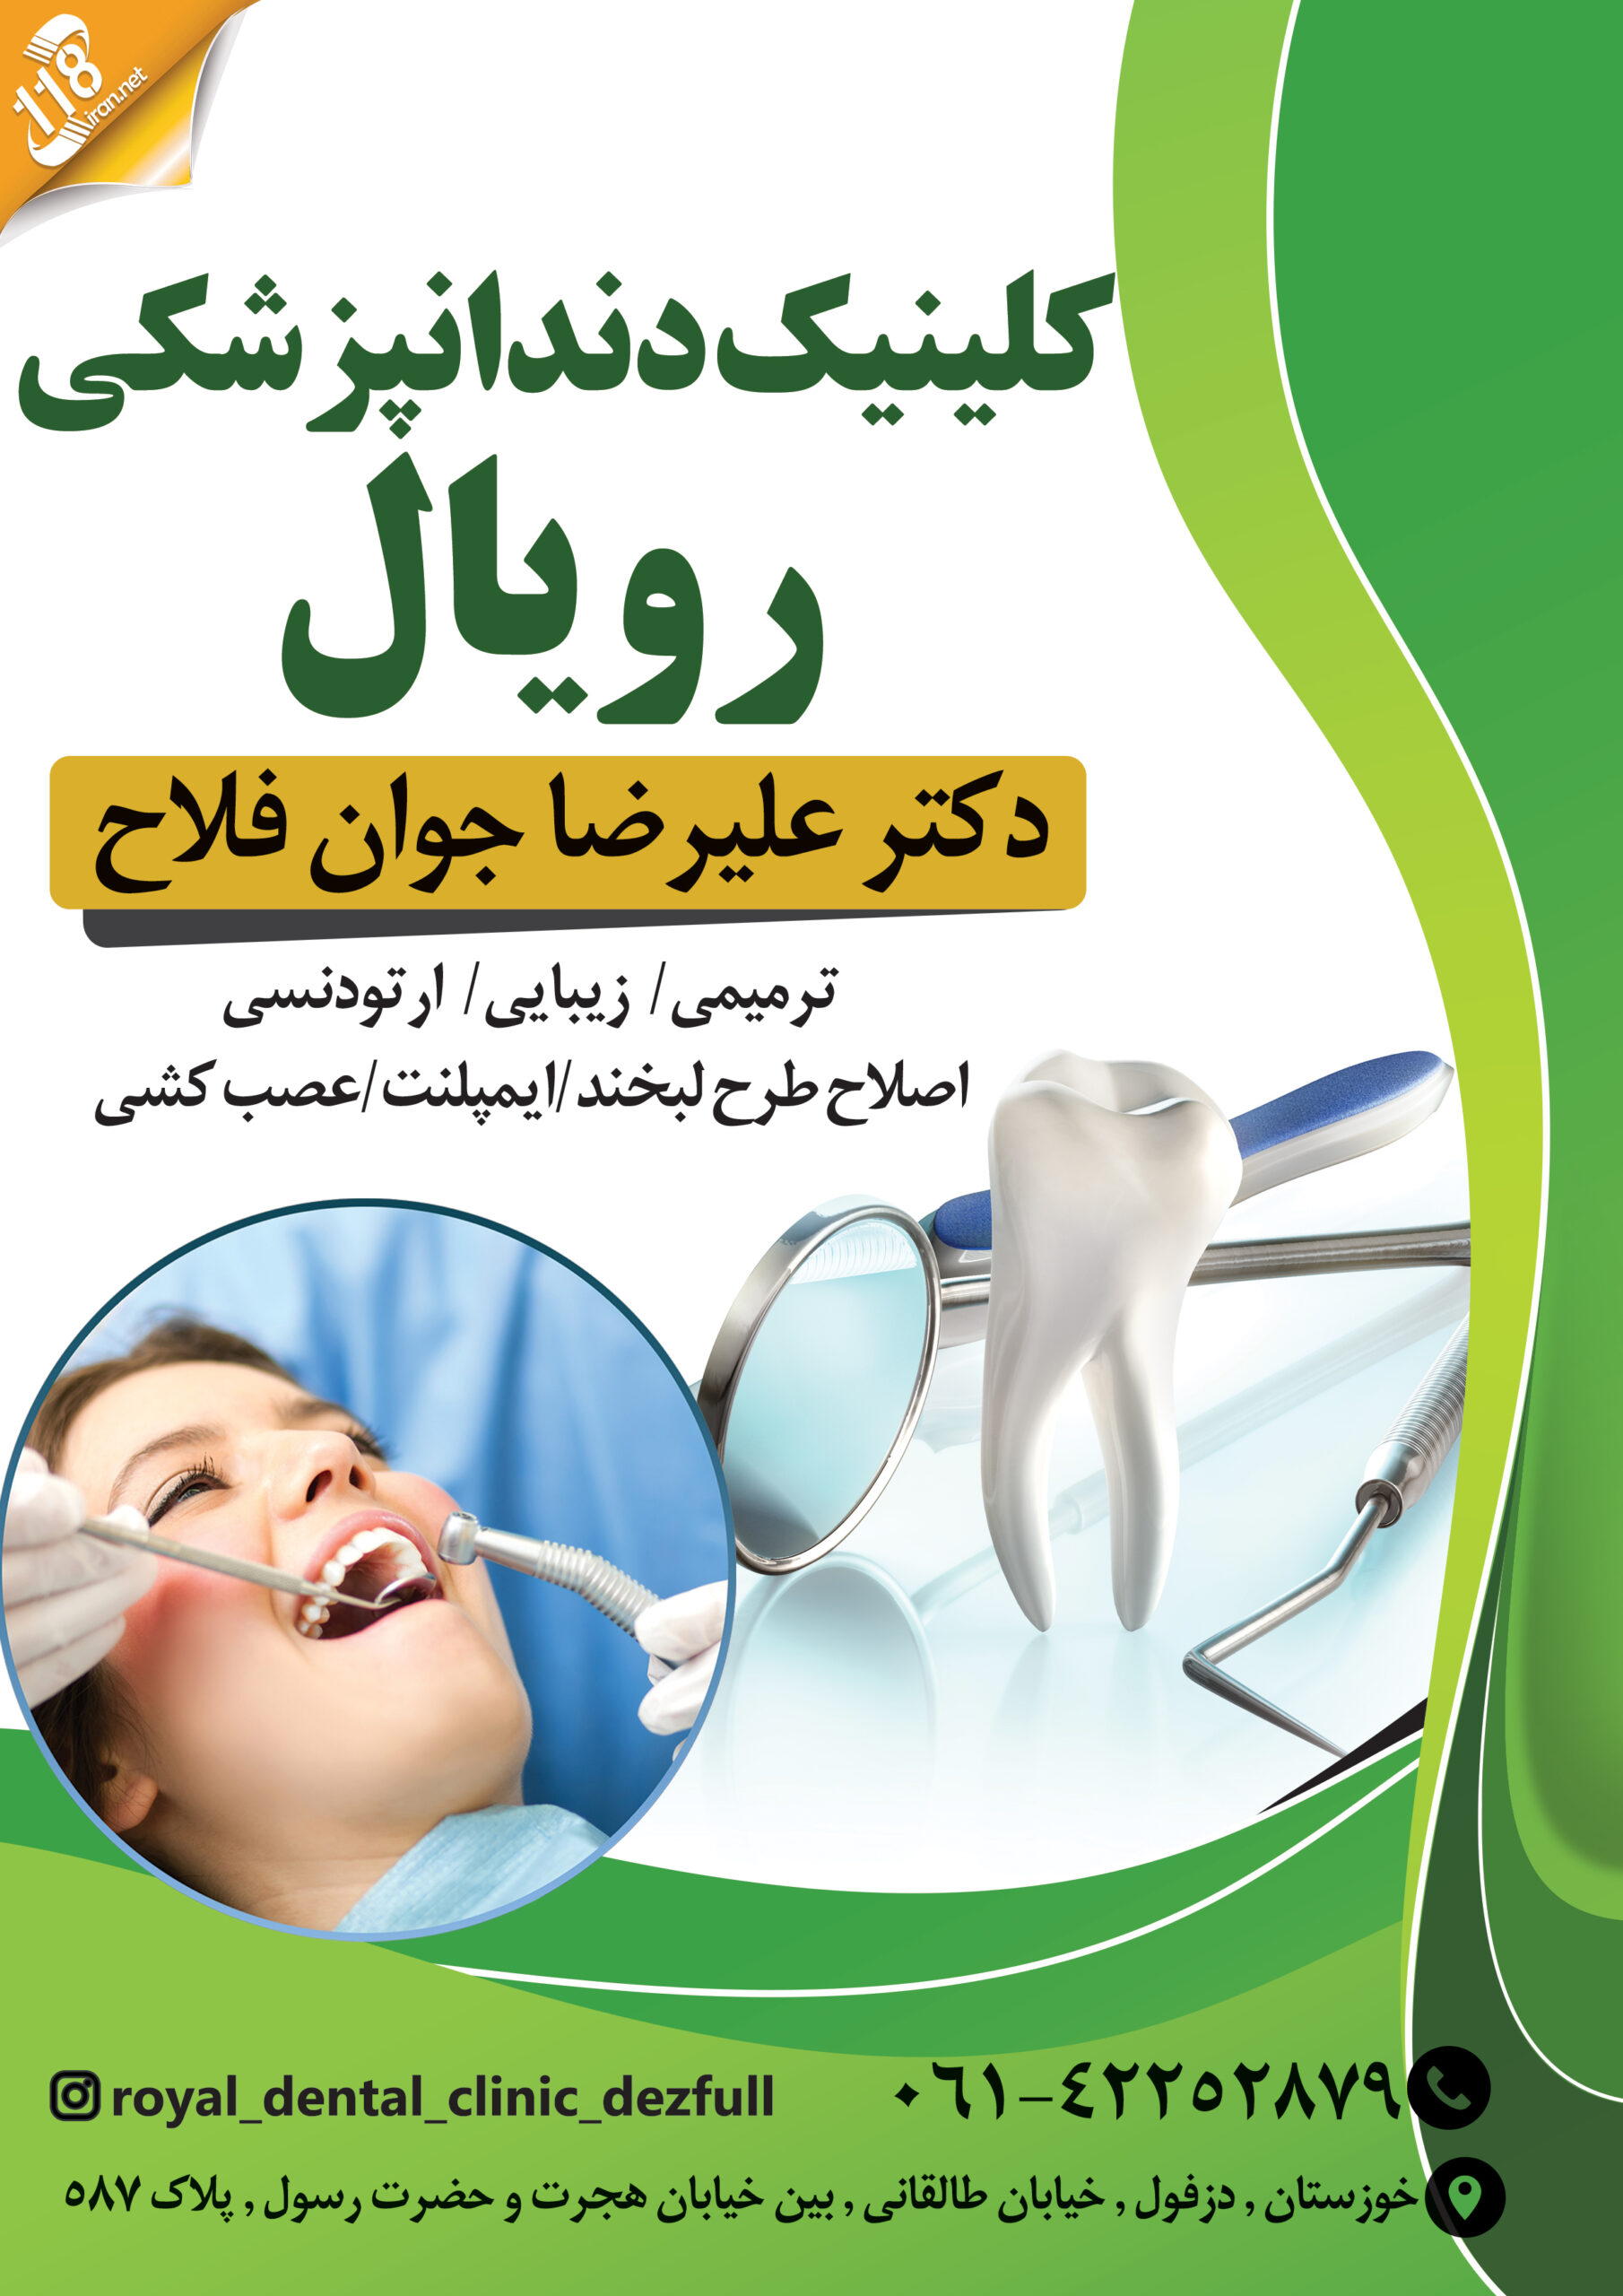  کلینیک دندانپزشکی رویال در دزفول 